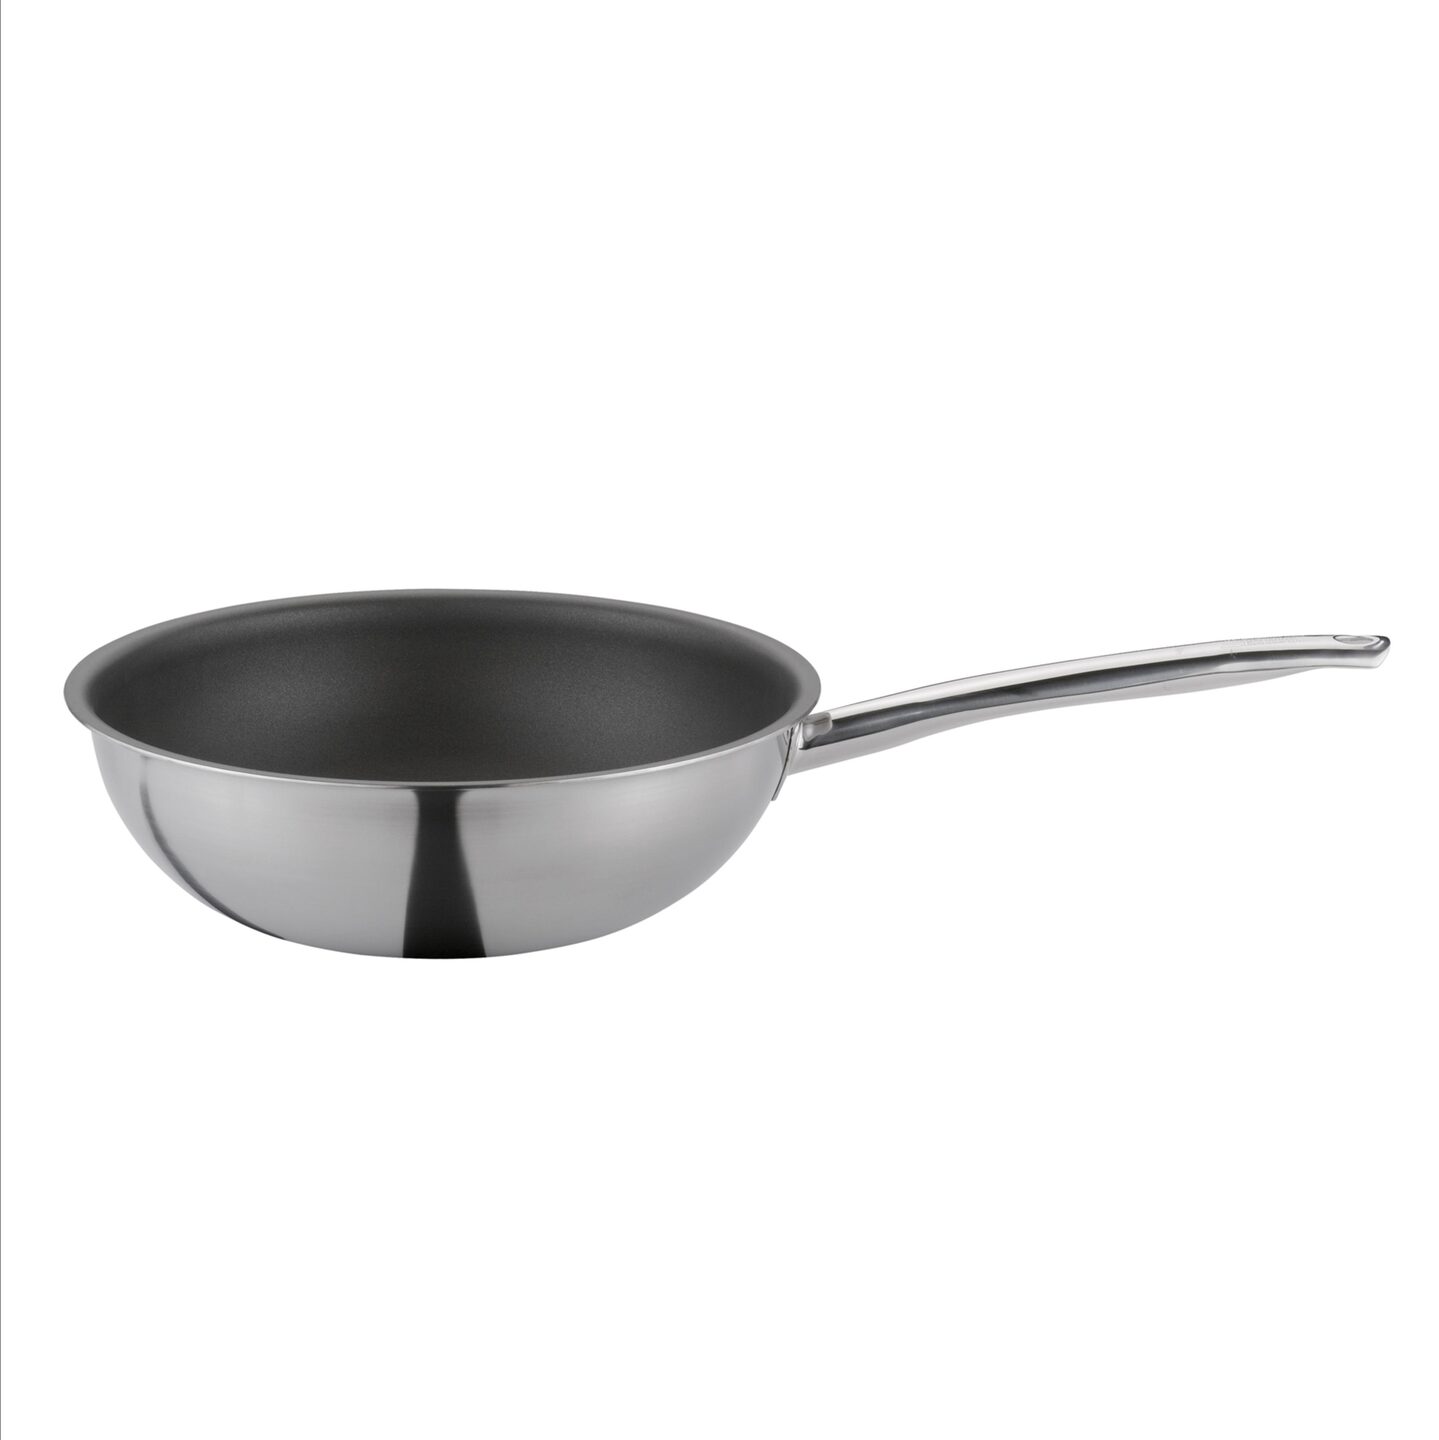 Verder aansluiten Seminarie Spring Vulcano Classic wok 28 cm (online) kopen? Onlinepannen.nl